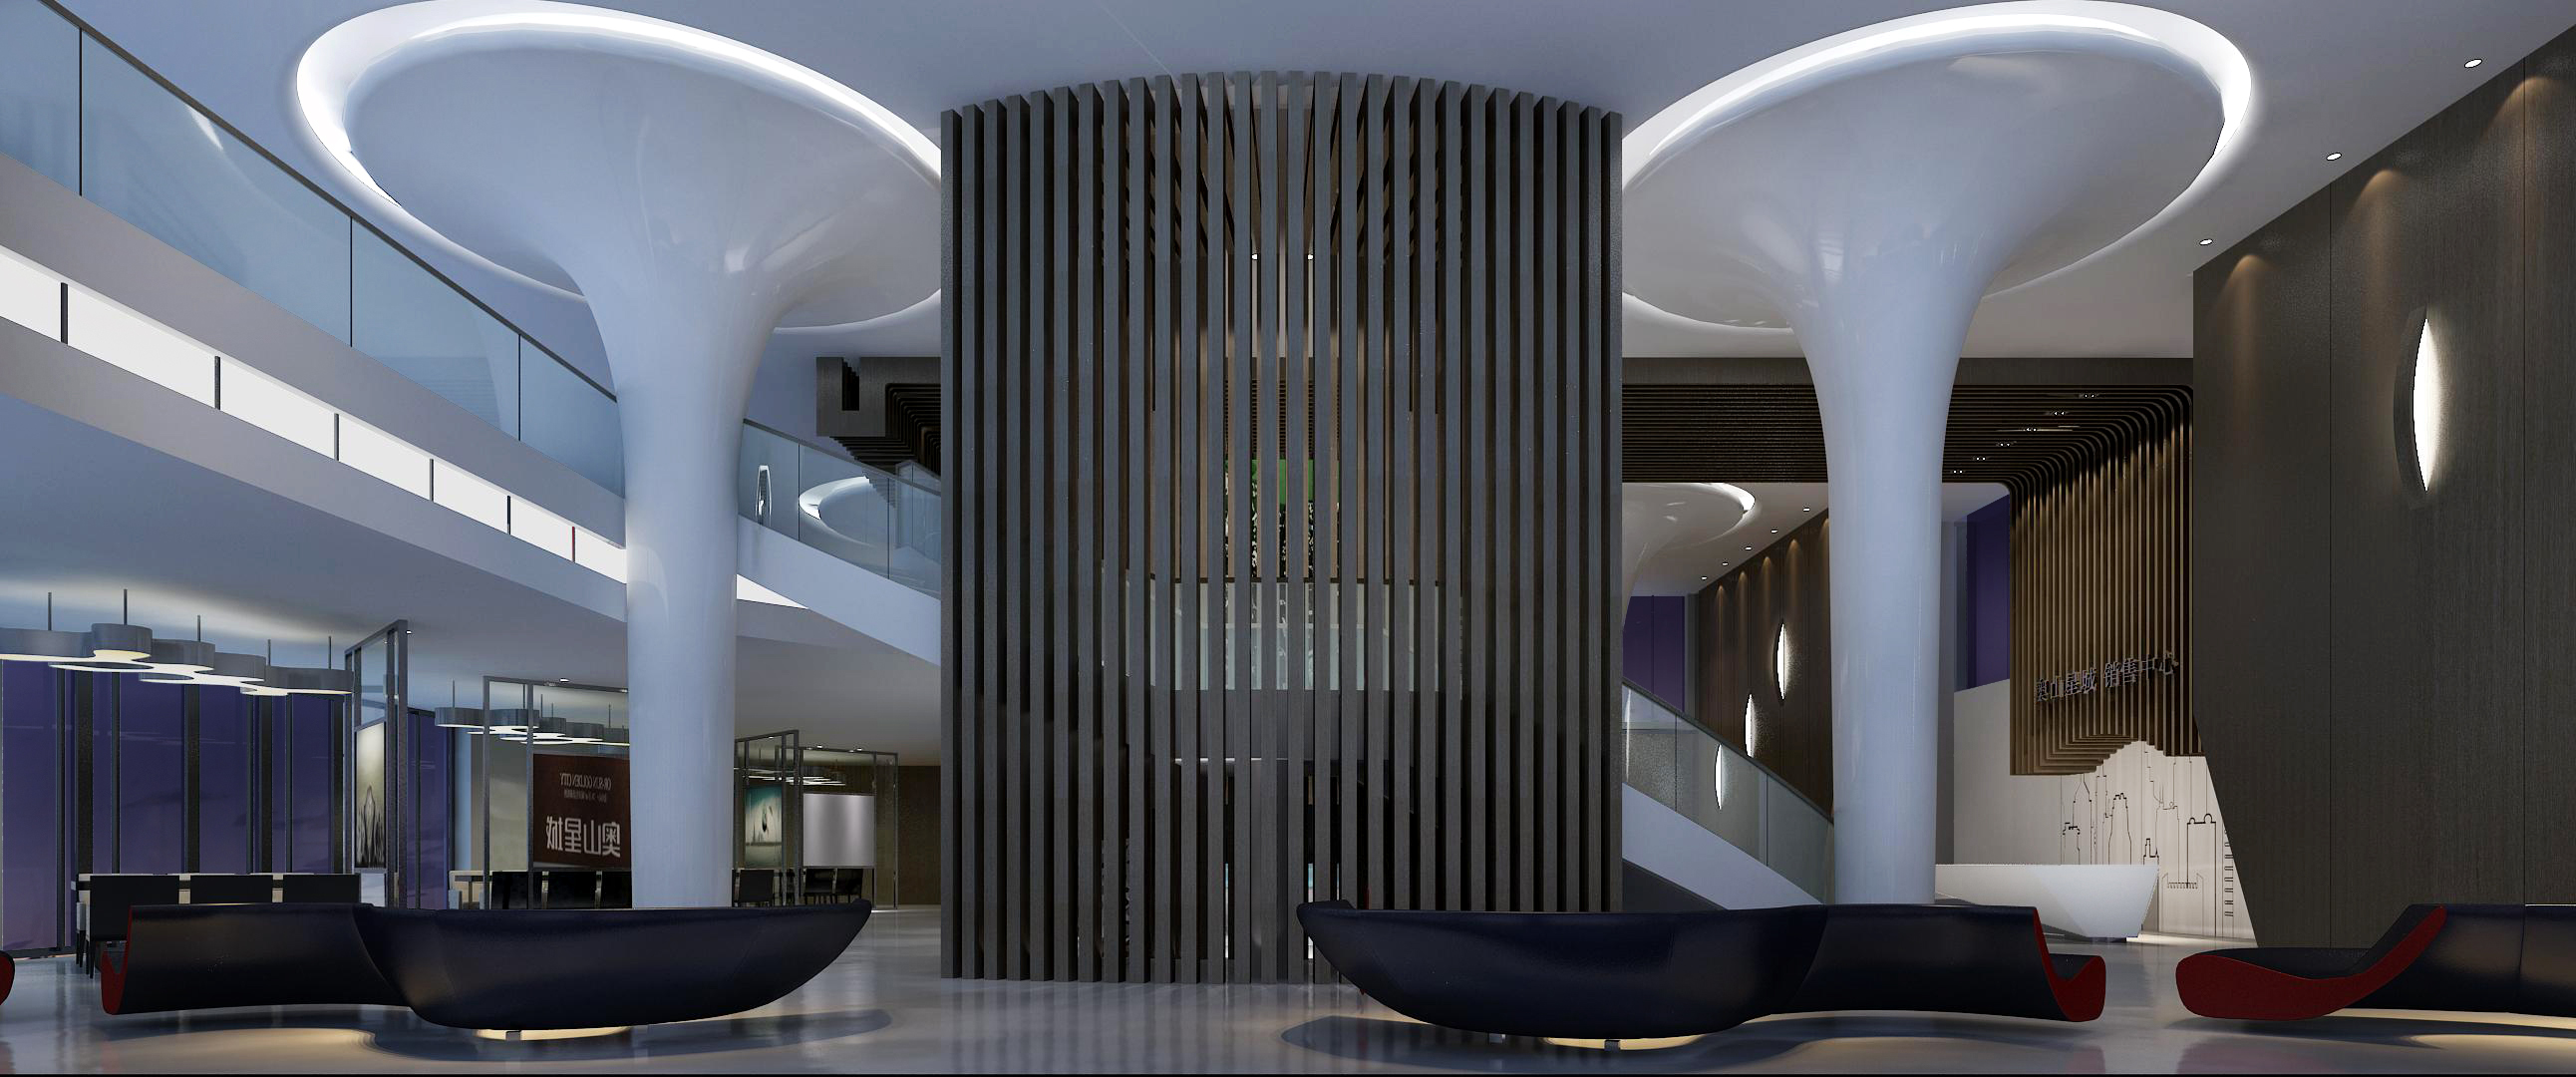 售楼处设计欧式中式现代高清售楼部效果图3D效果图-20